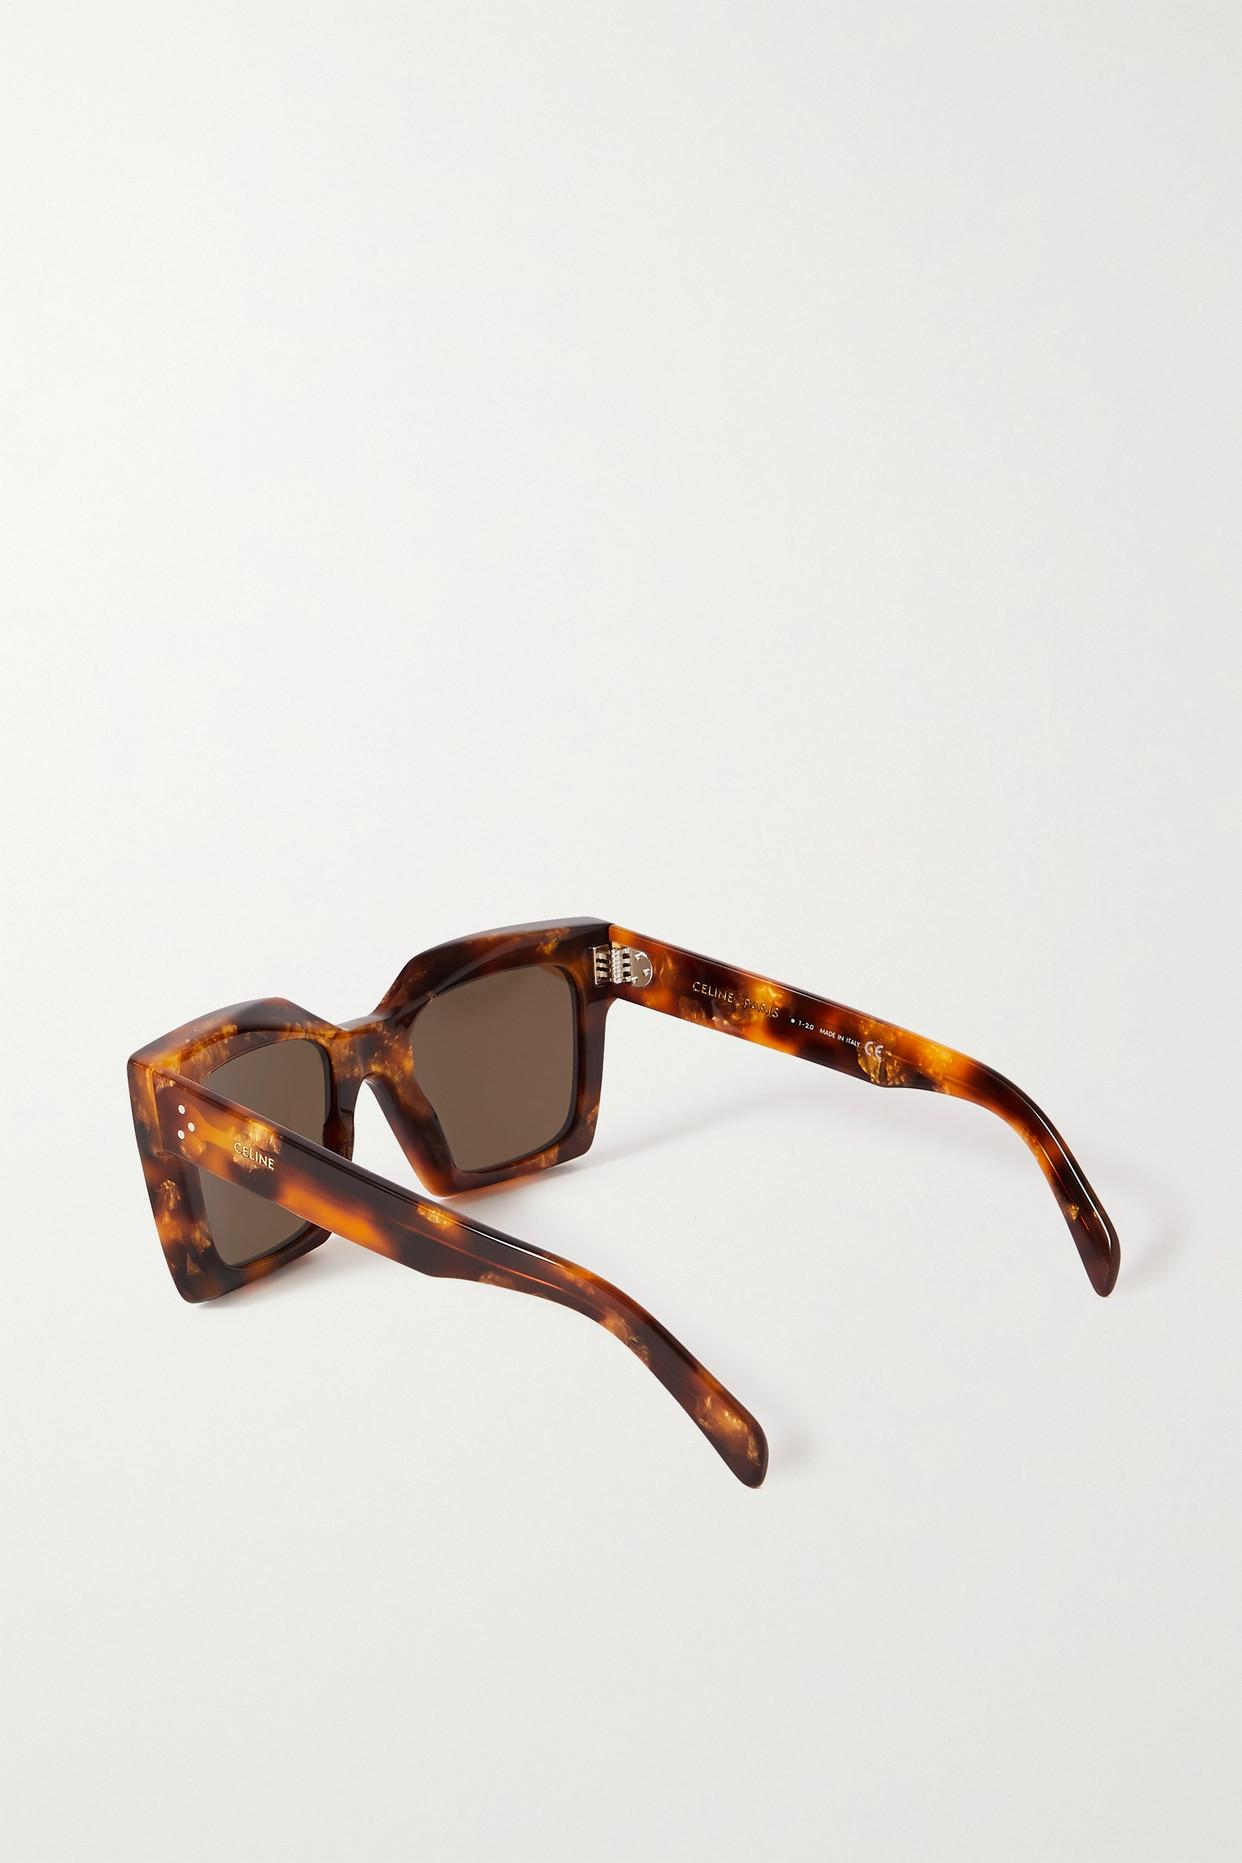 Celine Square-frame Tortoiseshell Acetate Sunglasses in Brown | Lyst